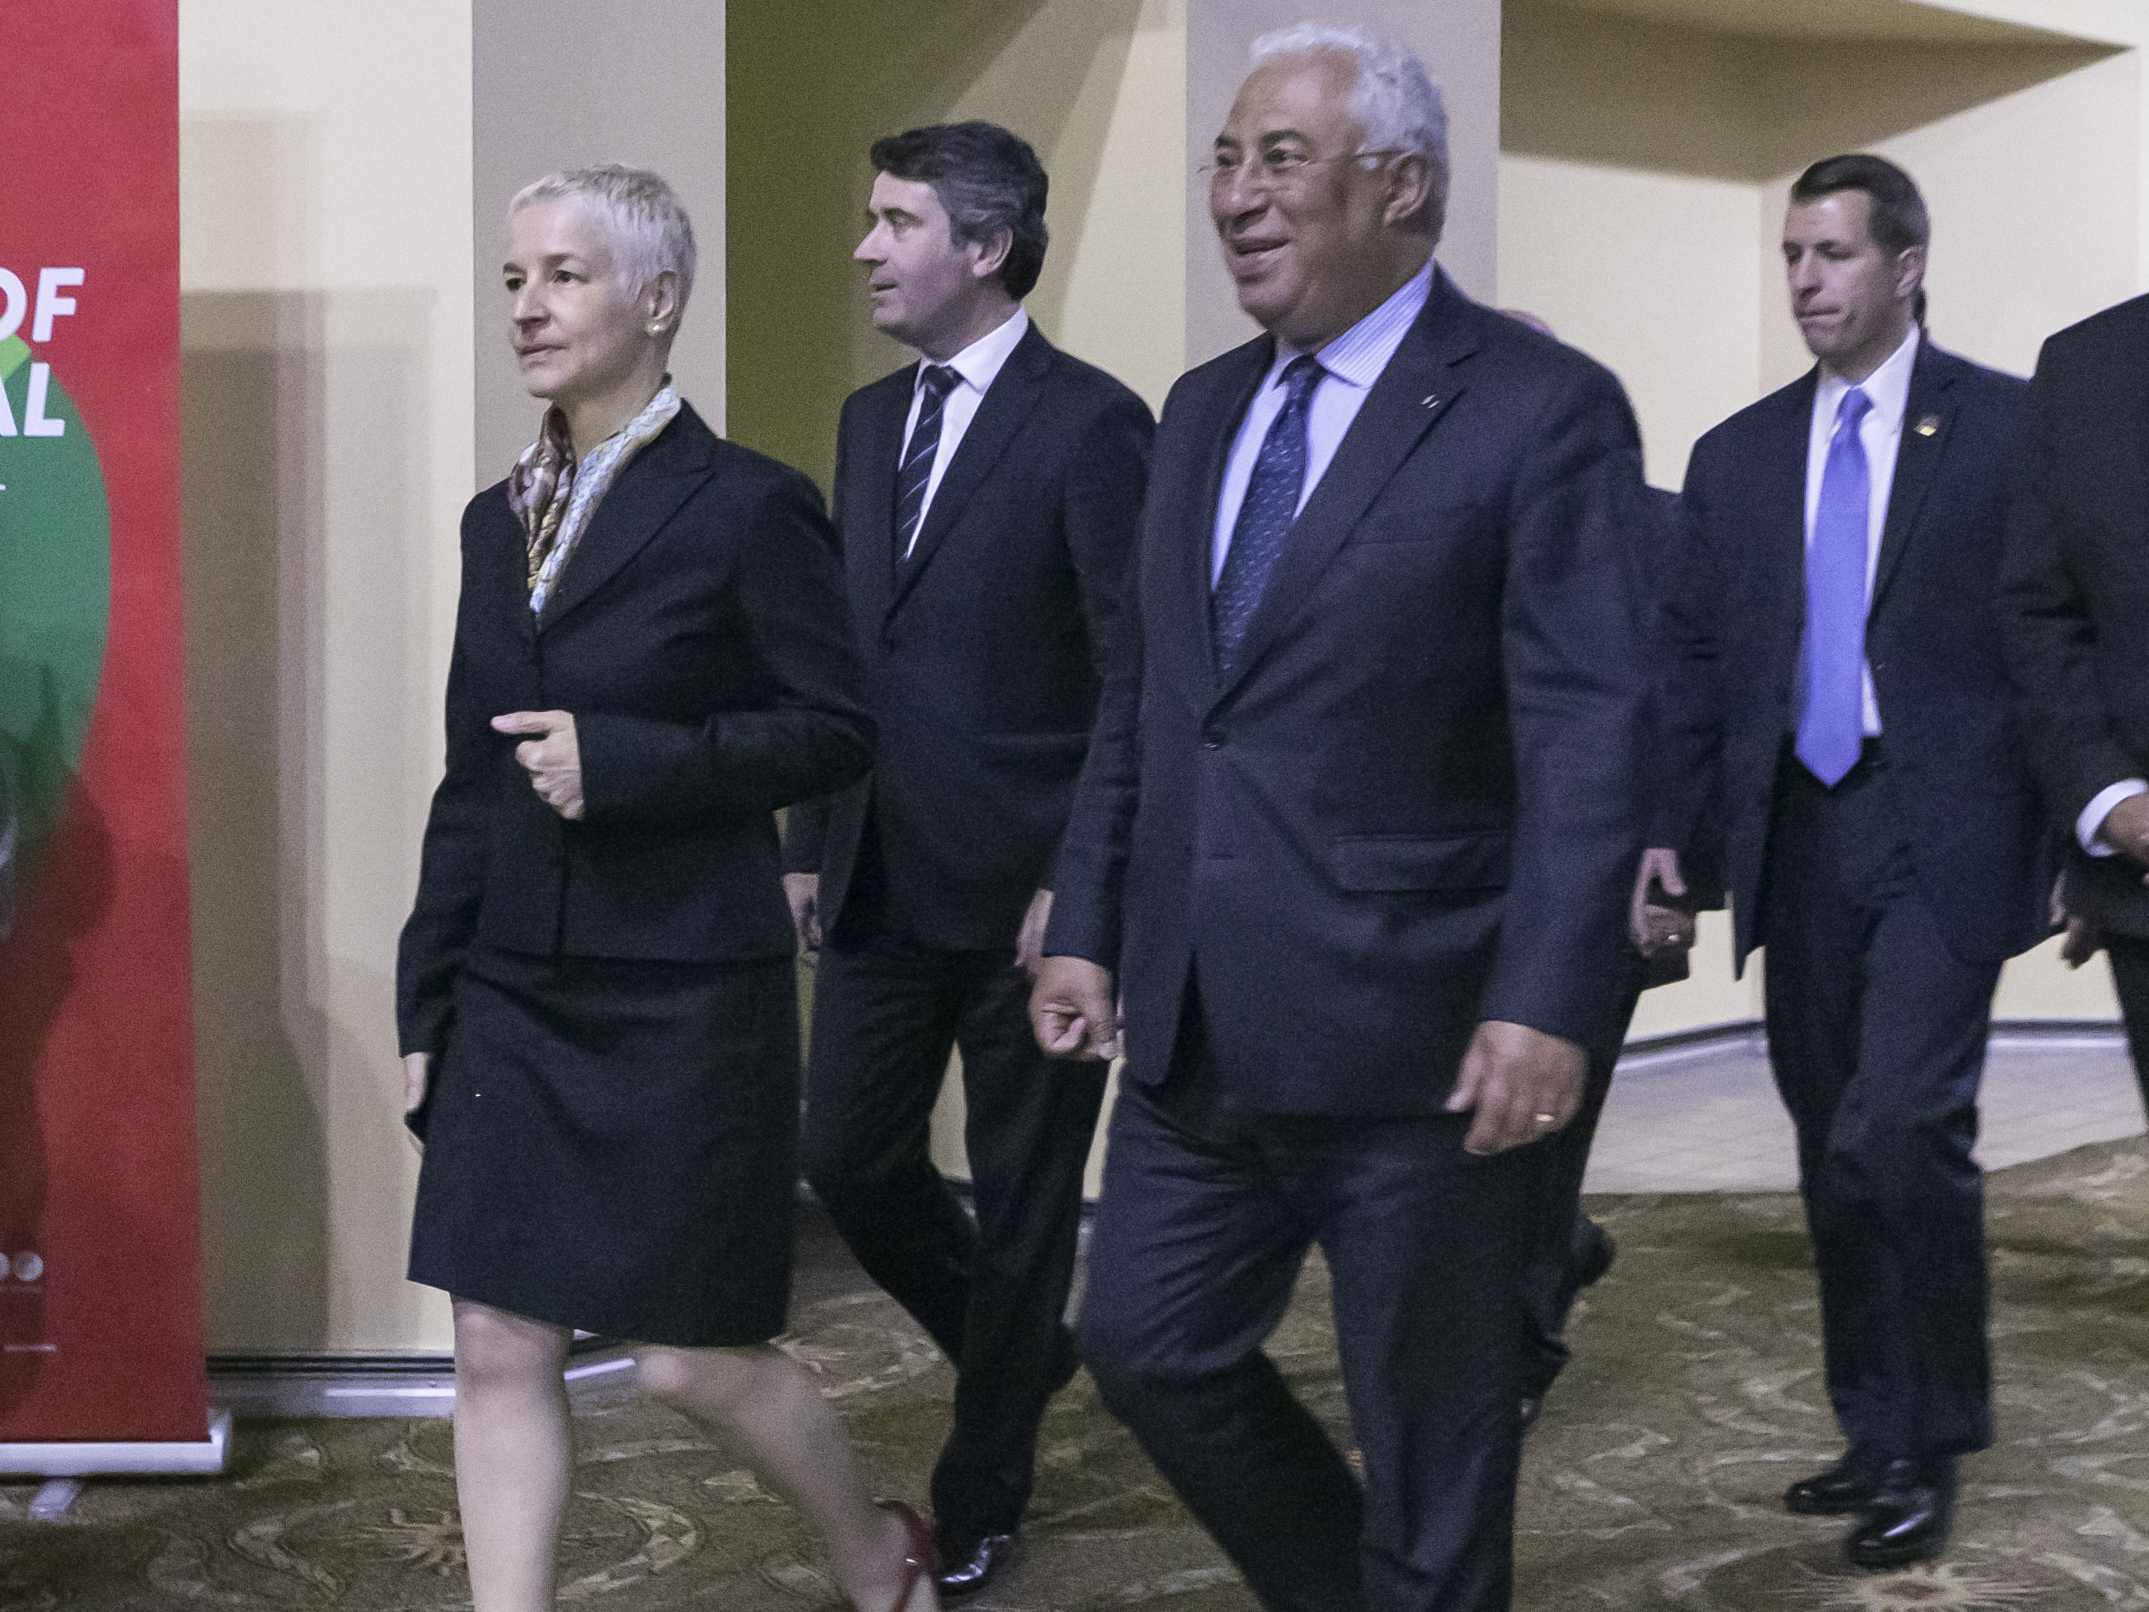 Event_2018 Portuguese Prime Minister Reception9969